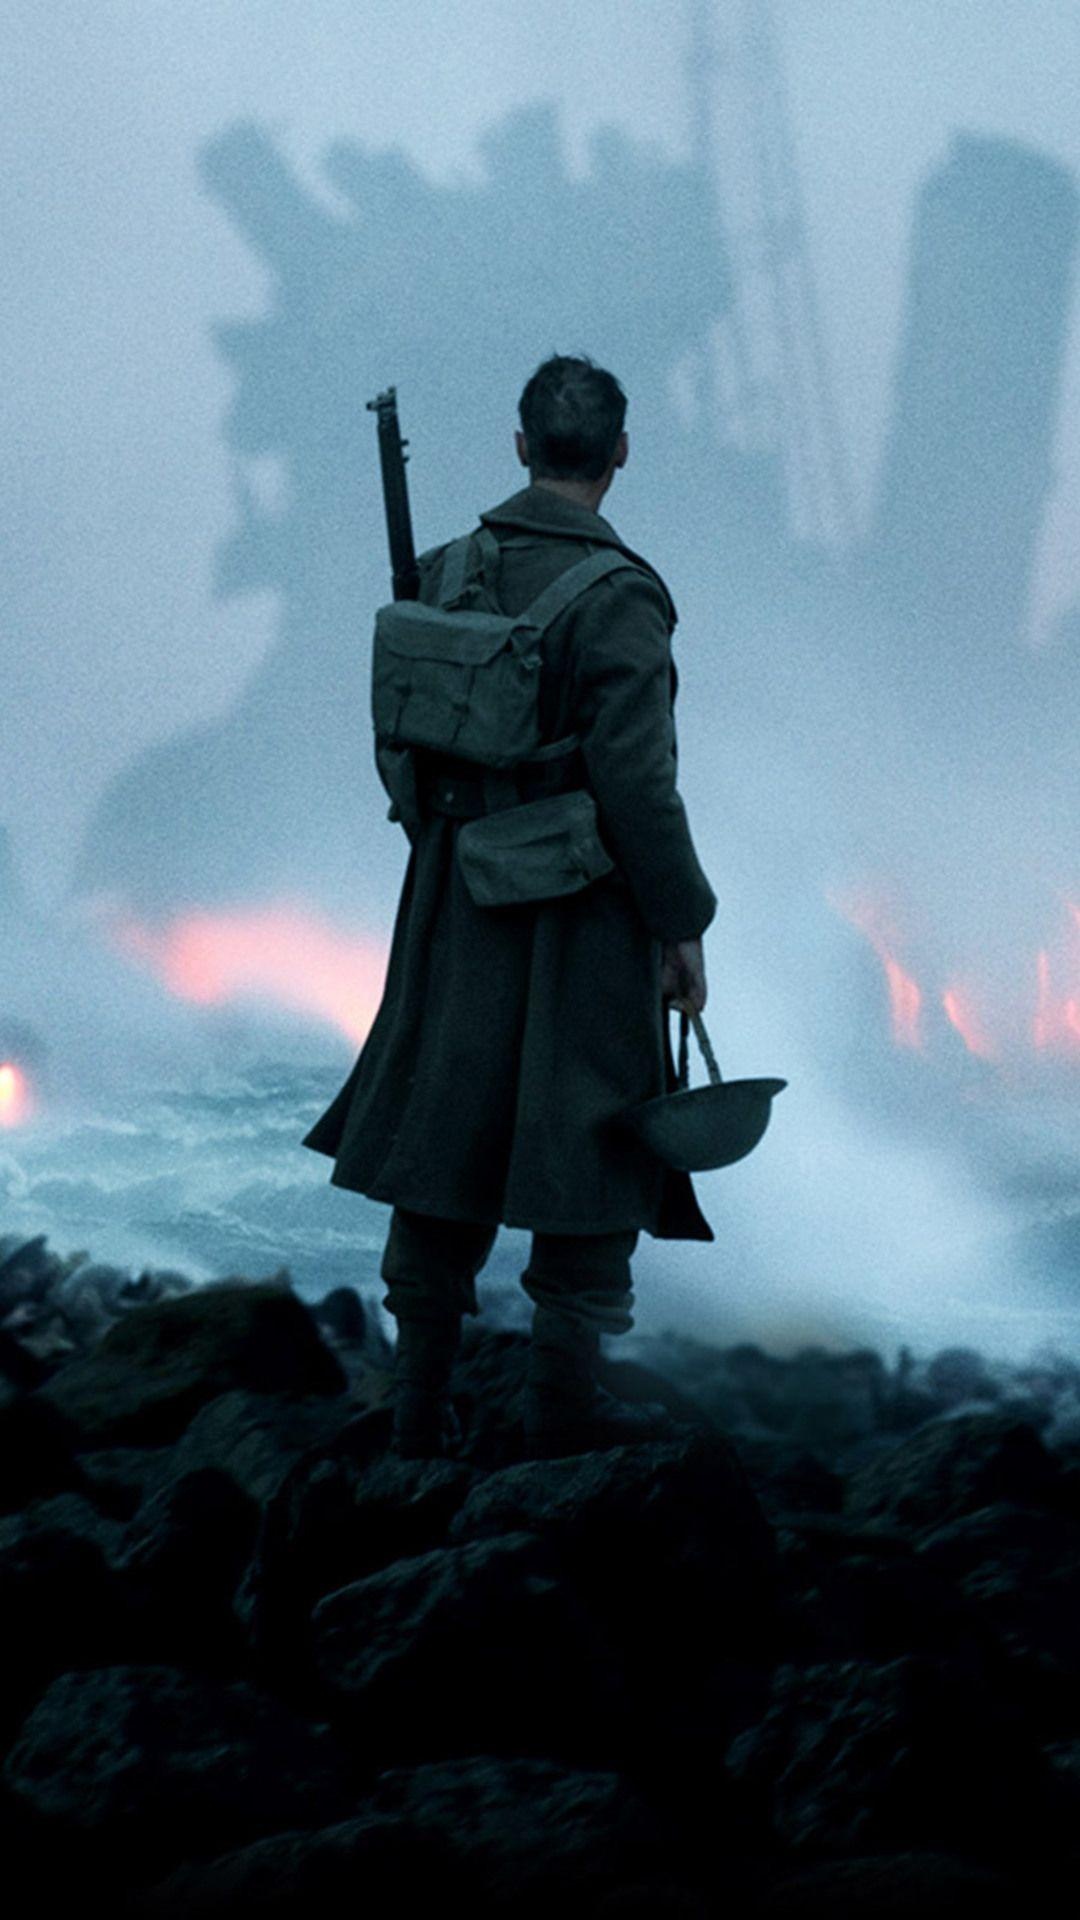 Dunkirk 2017, War film, Intense action, Christopher Nolan, 1080x1920 Full HD Phone